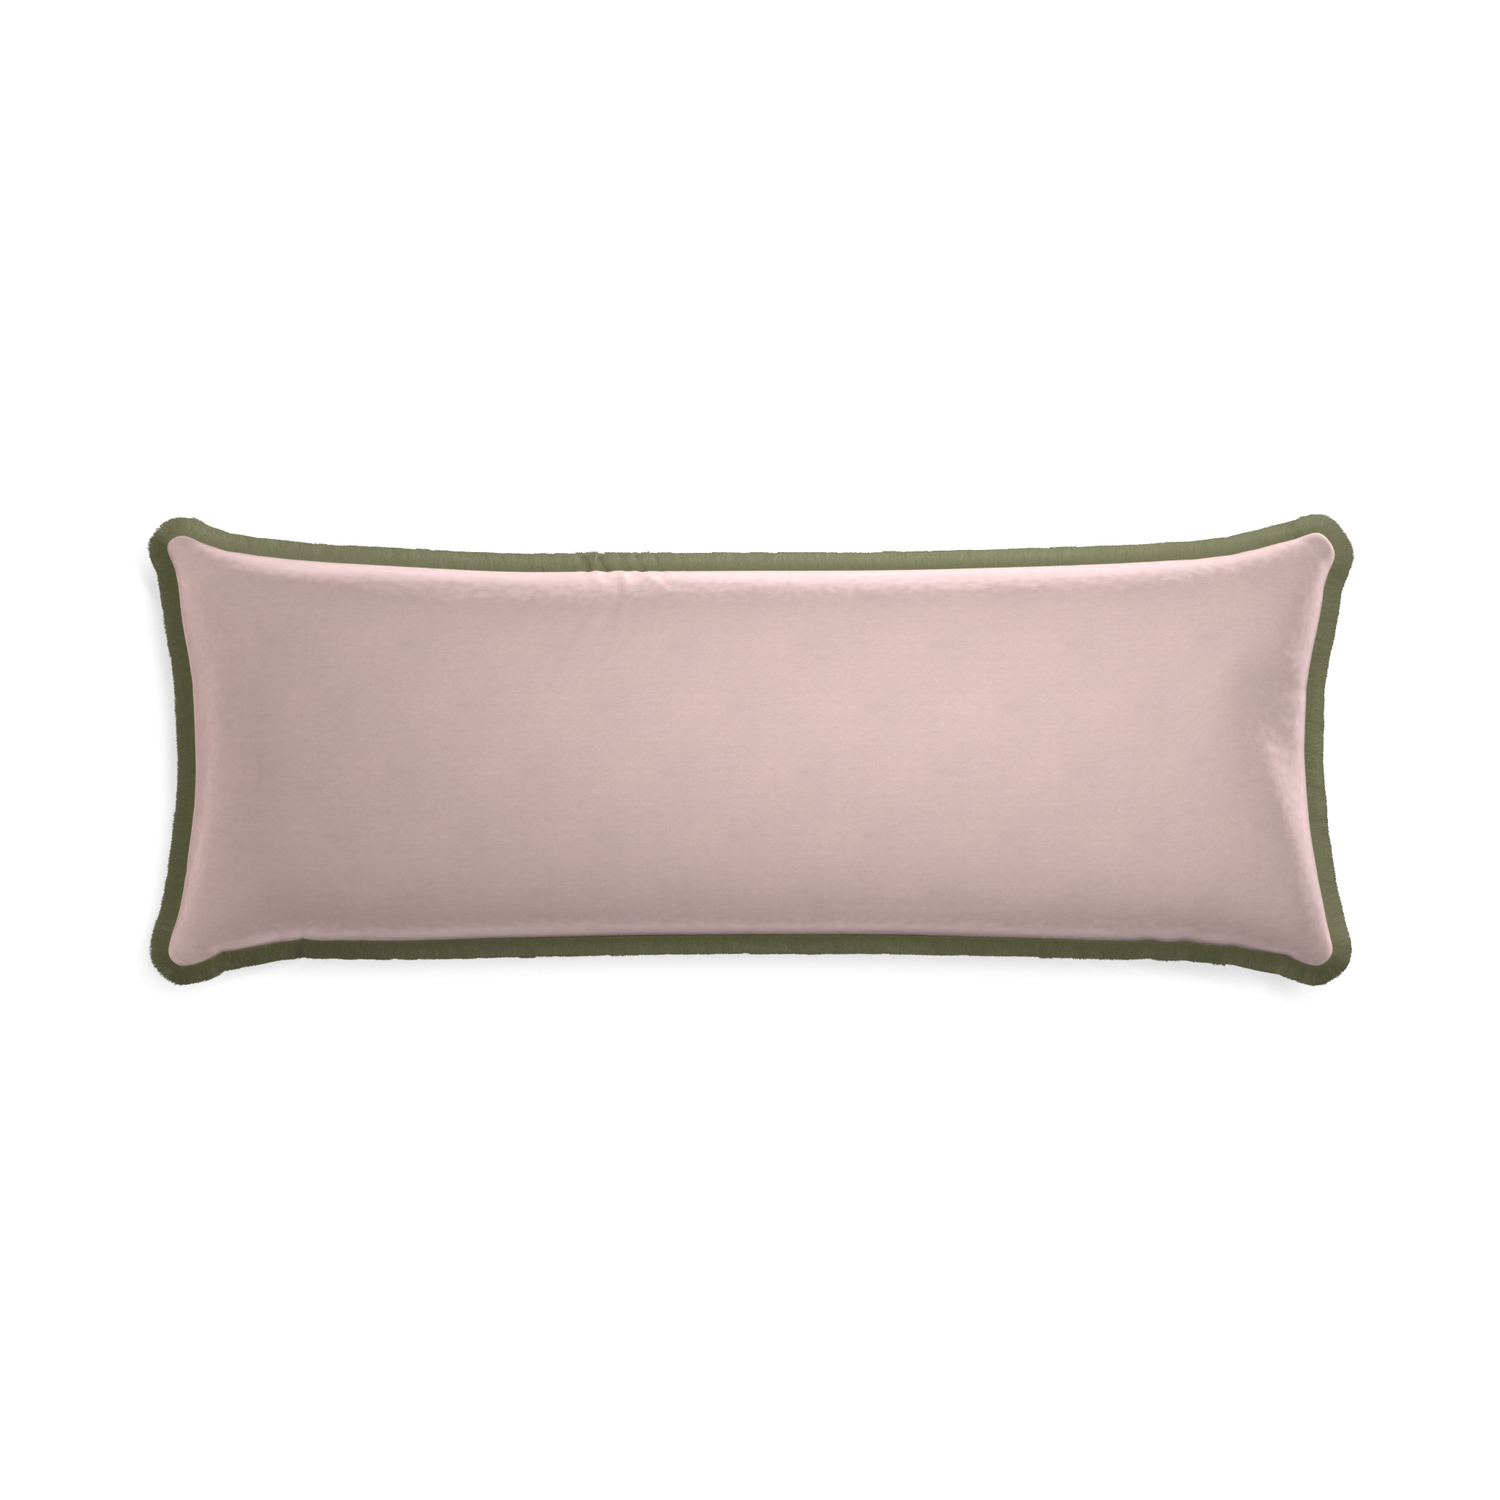 Xl-lumbar rose velvet custom pillow with sage fringe on white background